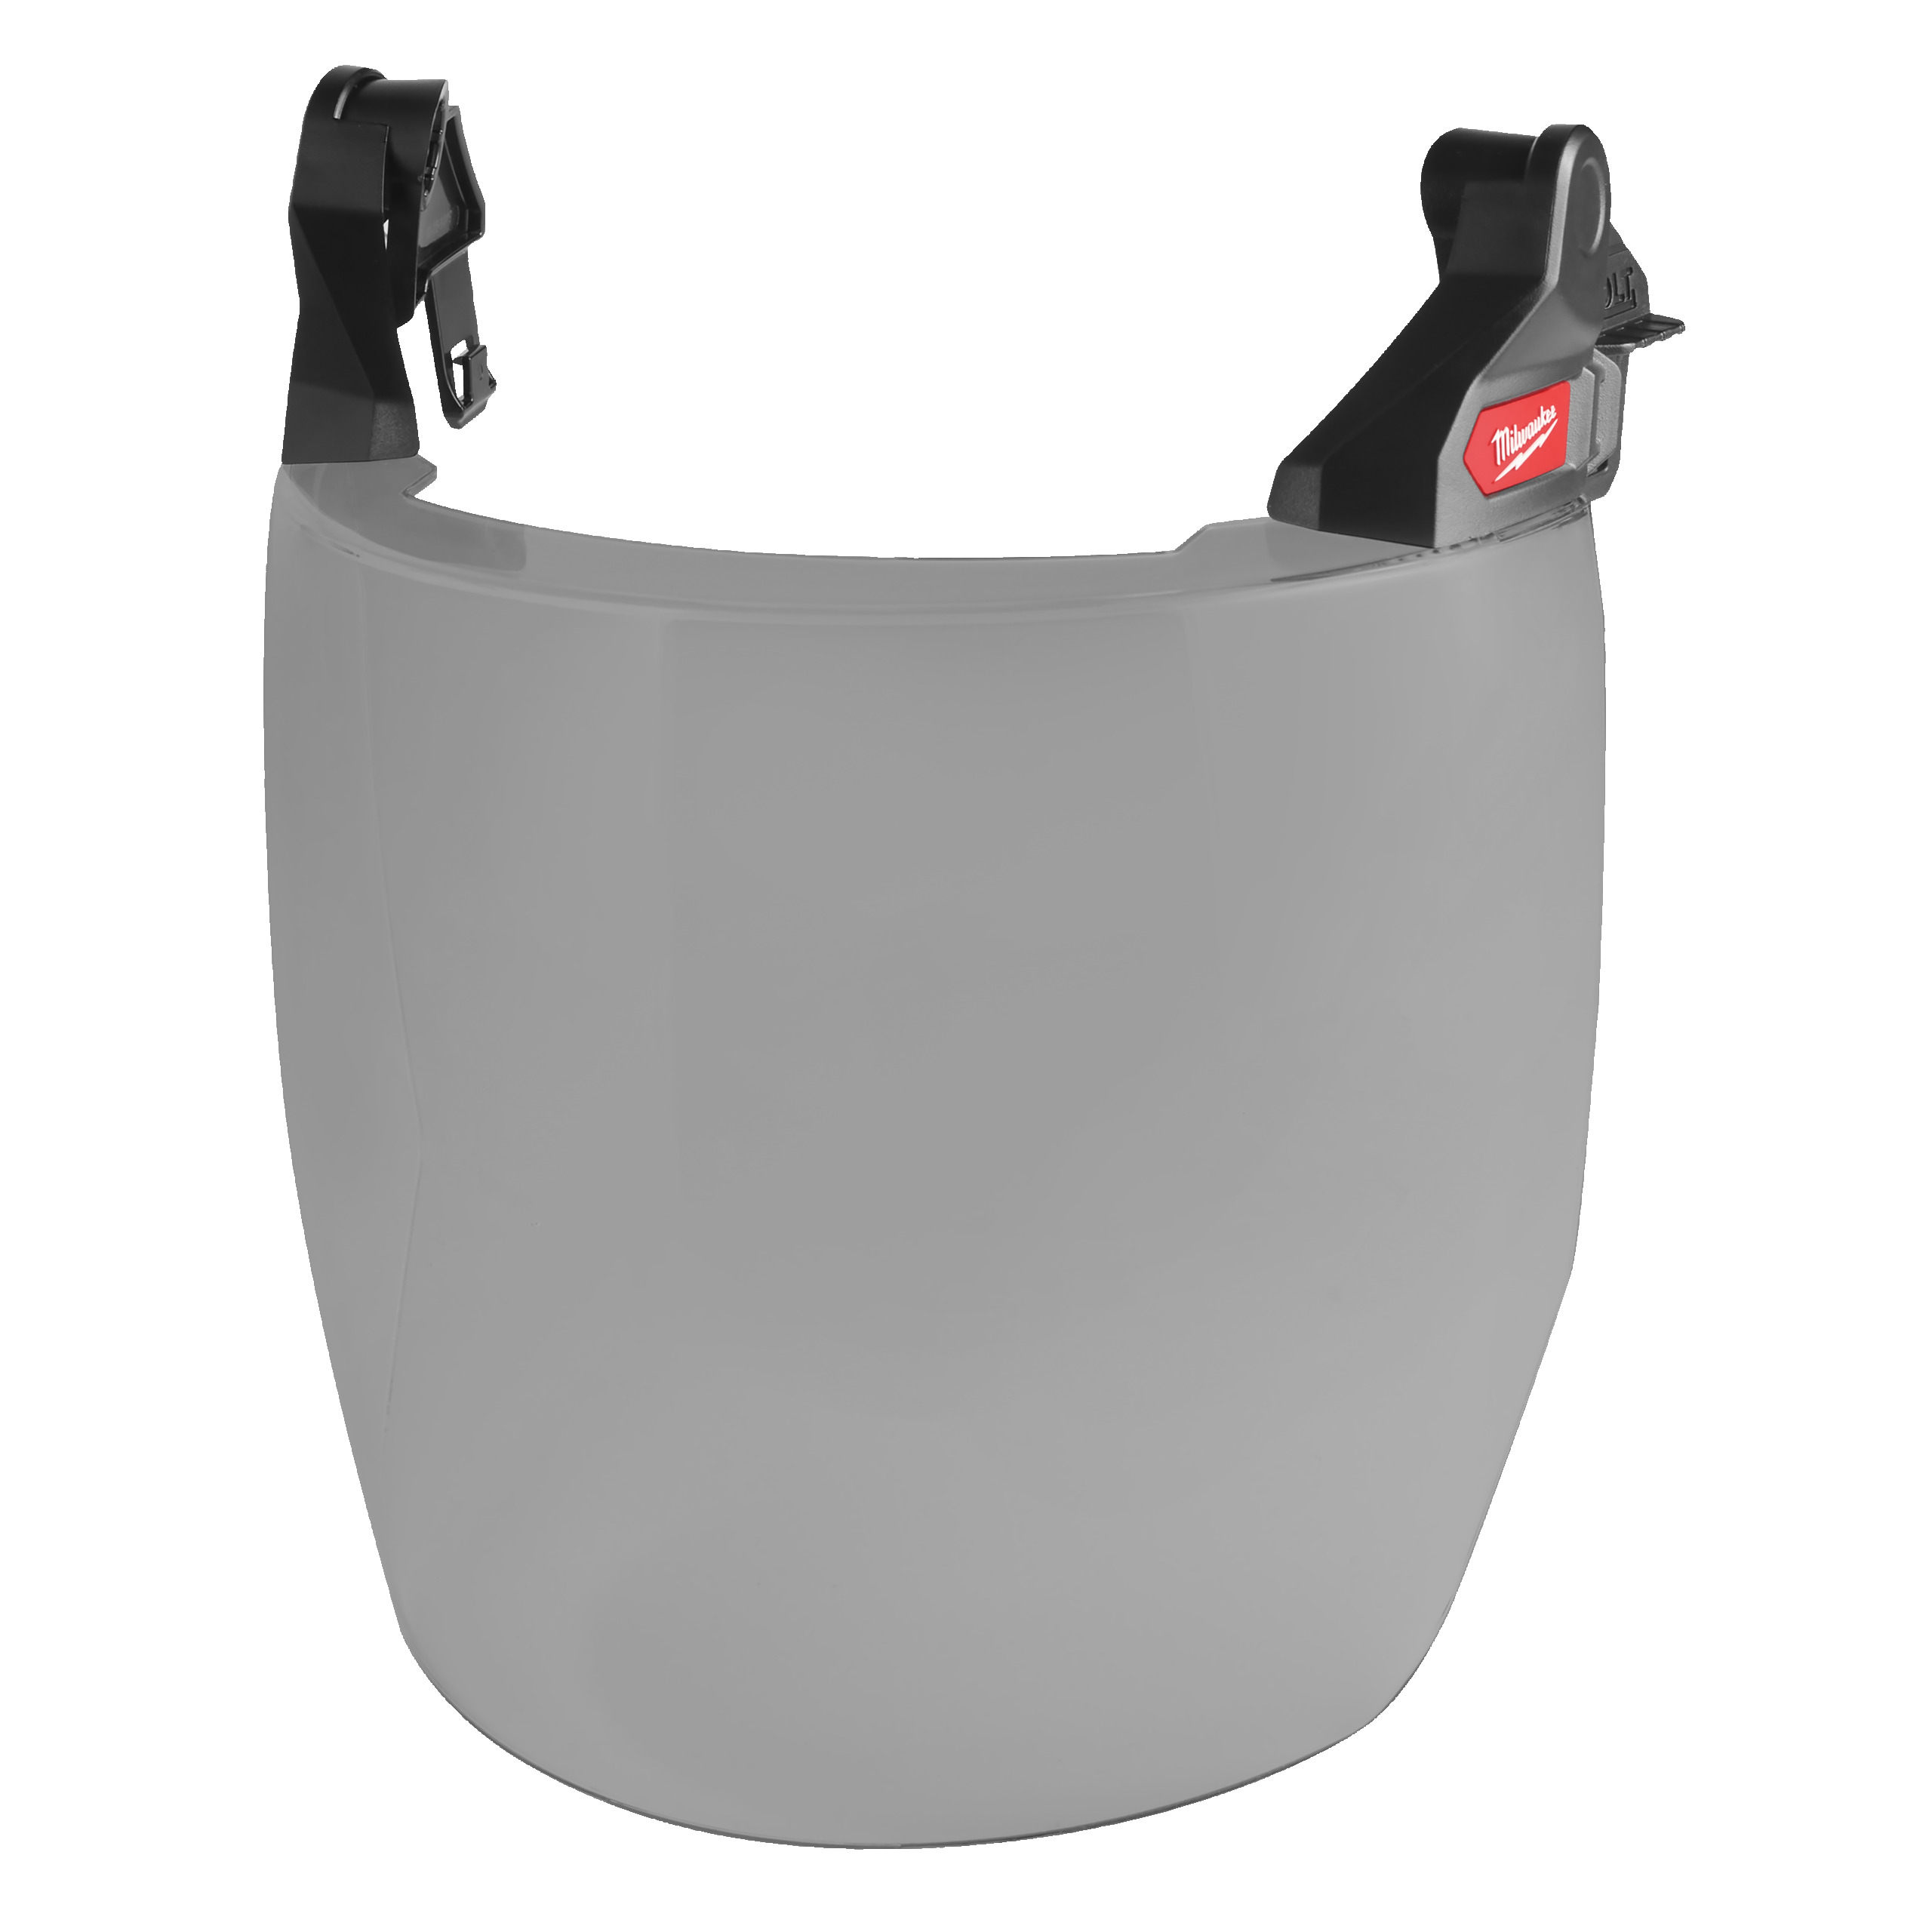 BOLT Compact Komplettvisier | grau, für BOLT200 Helm